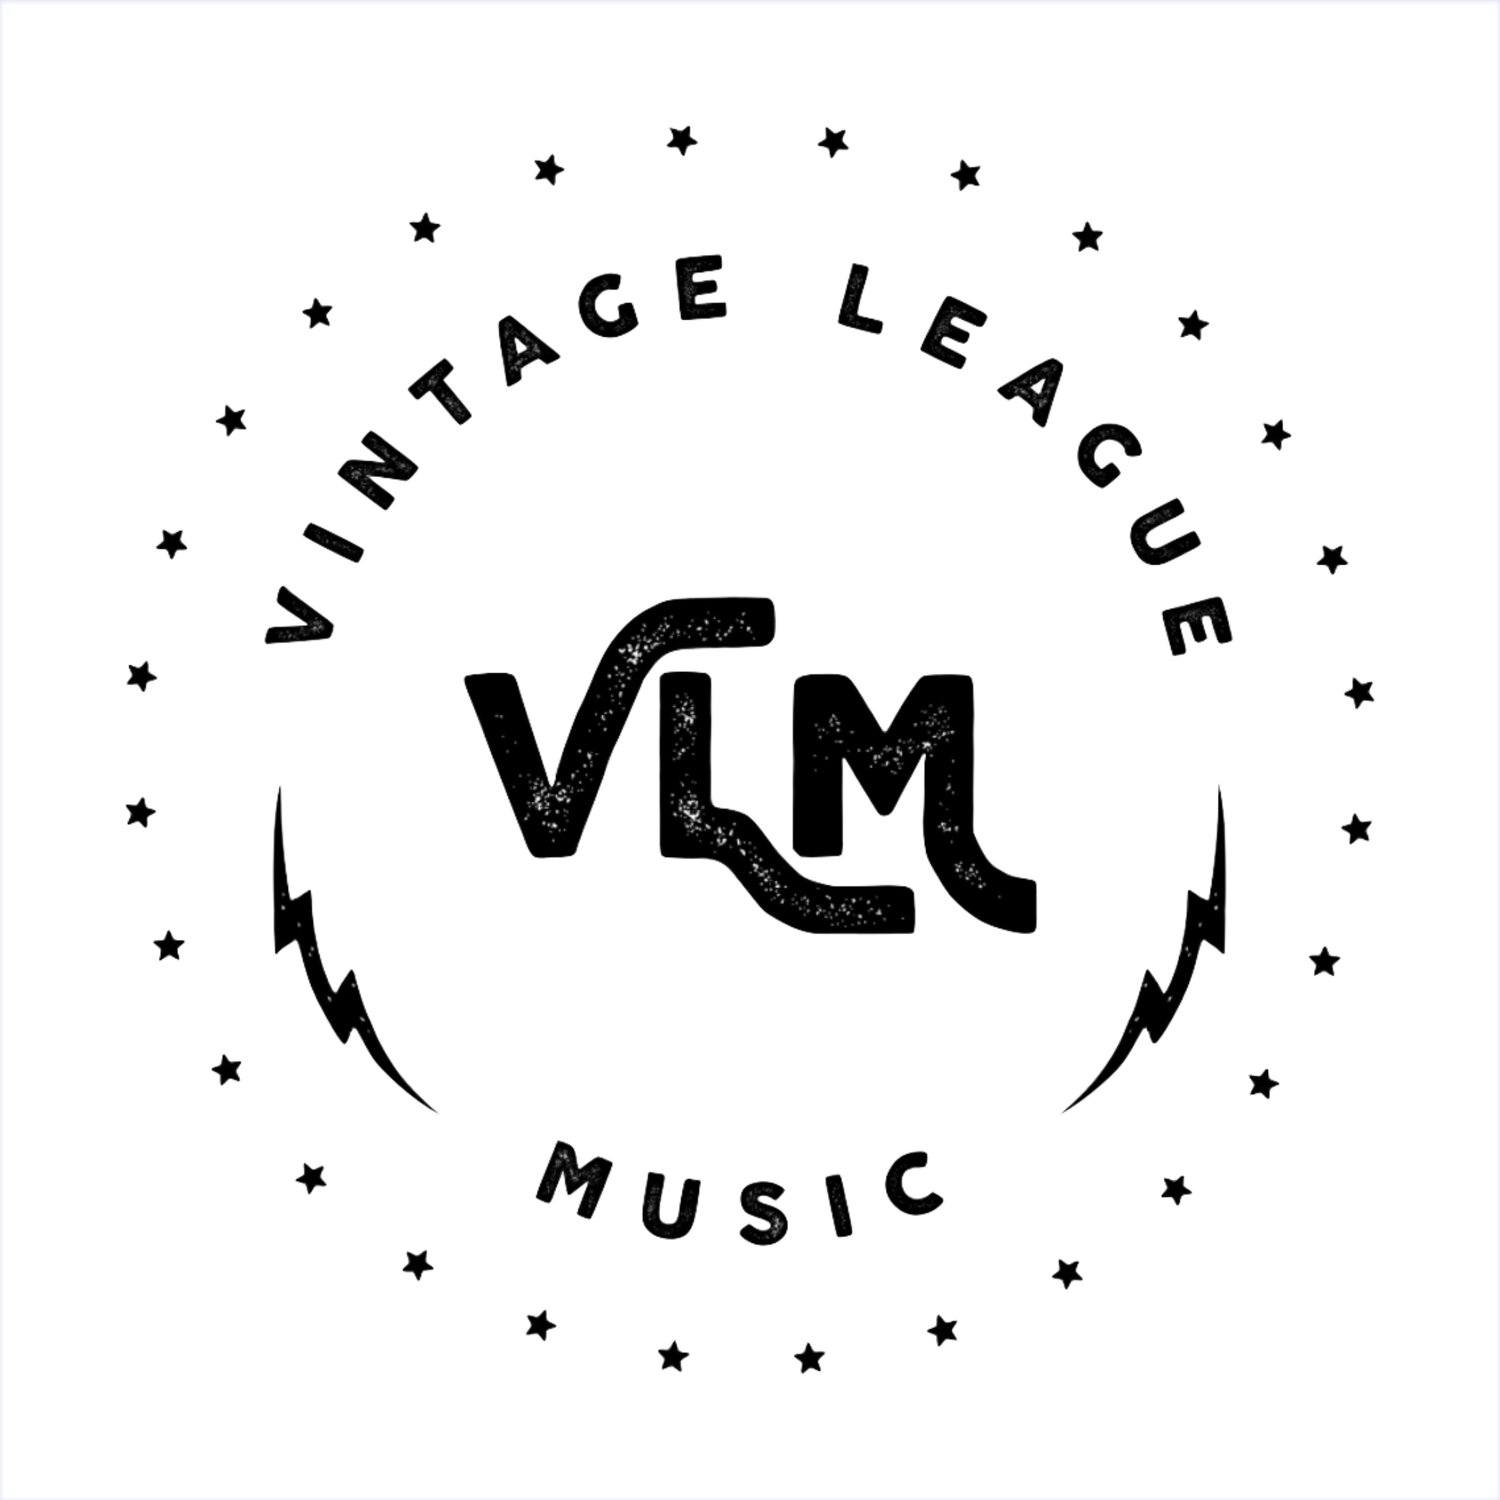 Vintage League Music